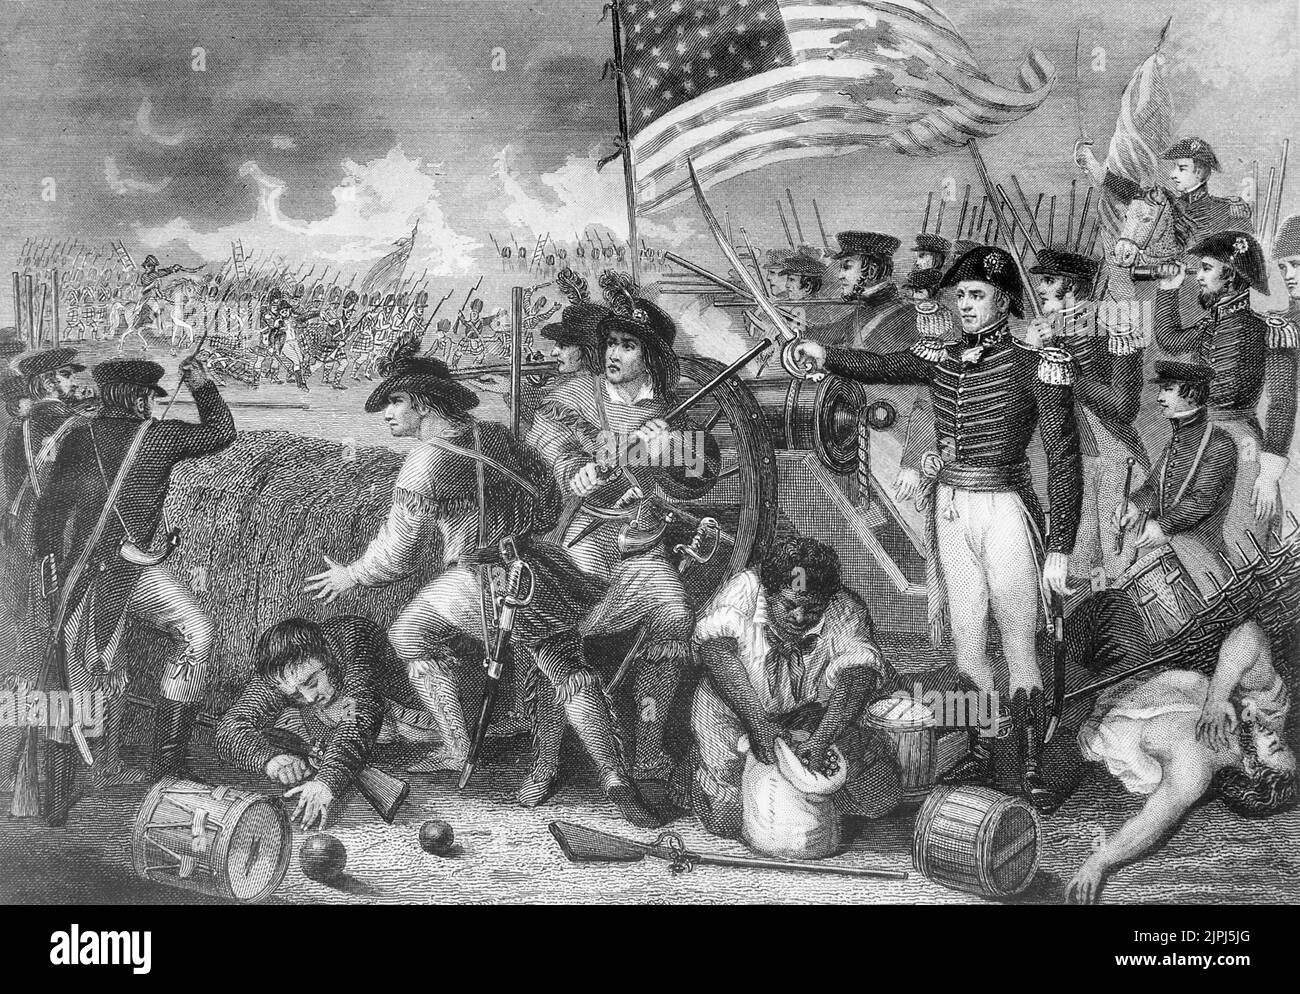 Guerre de 1812. Les forces américaines ont repoussé une attaque britannique contre la Nouvelle-Orléans en janvier 1815. La bataille a eu lieu avant que la nouvelle d'un traité de paix ne soit parvenue aux États-Unis. Guerre de 1812 Banque D'Images